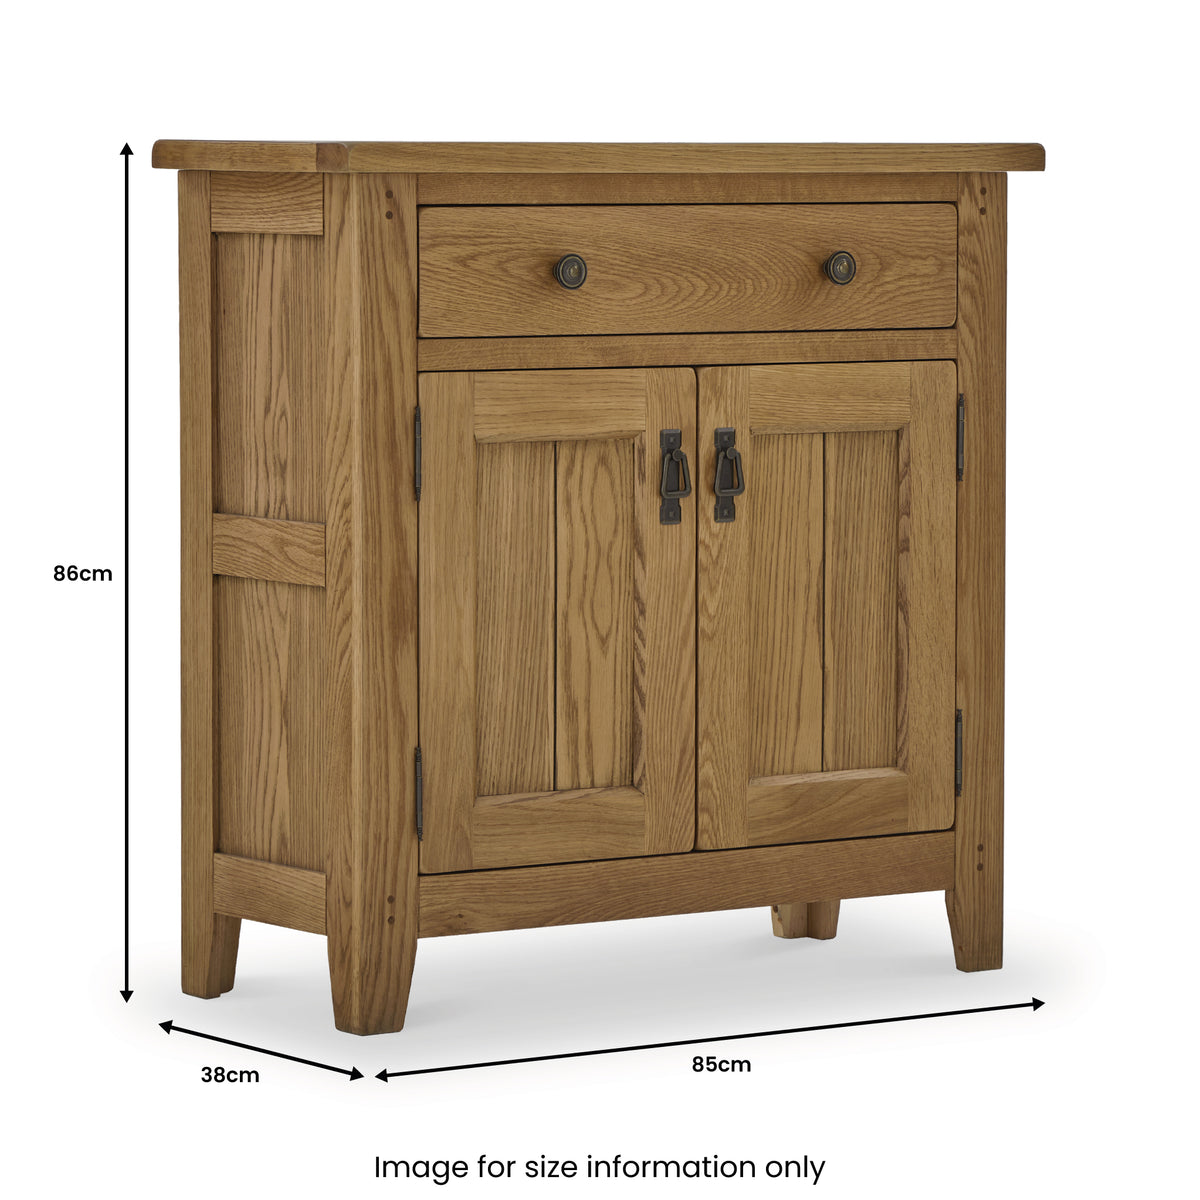 Broadway Oak Mini Sideboard Cabinet dimensions